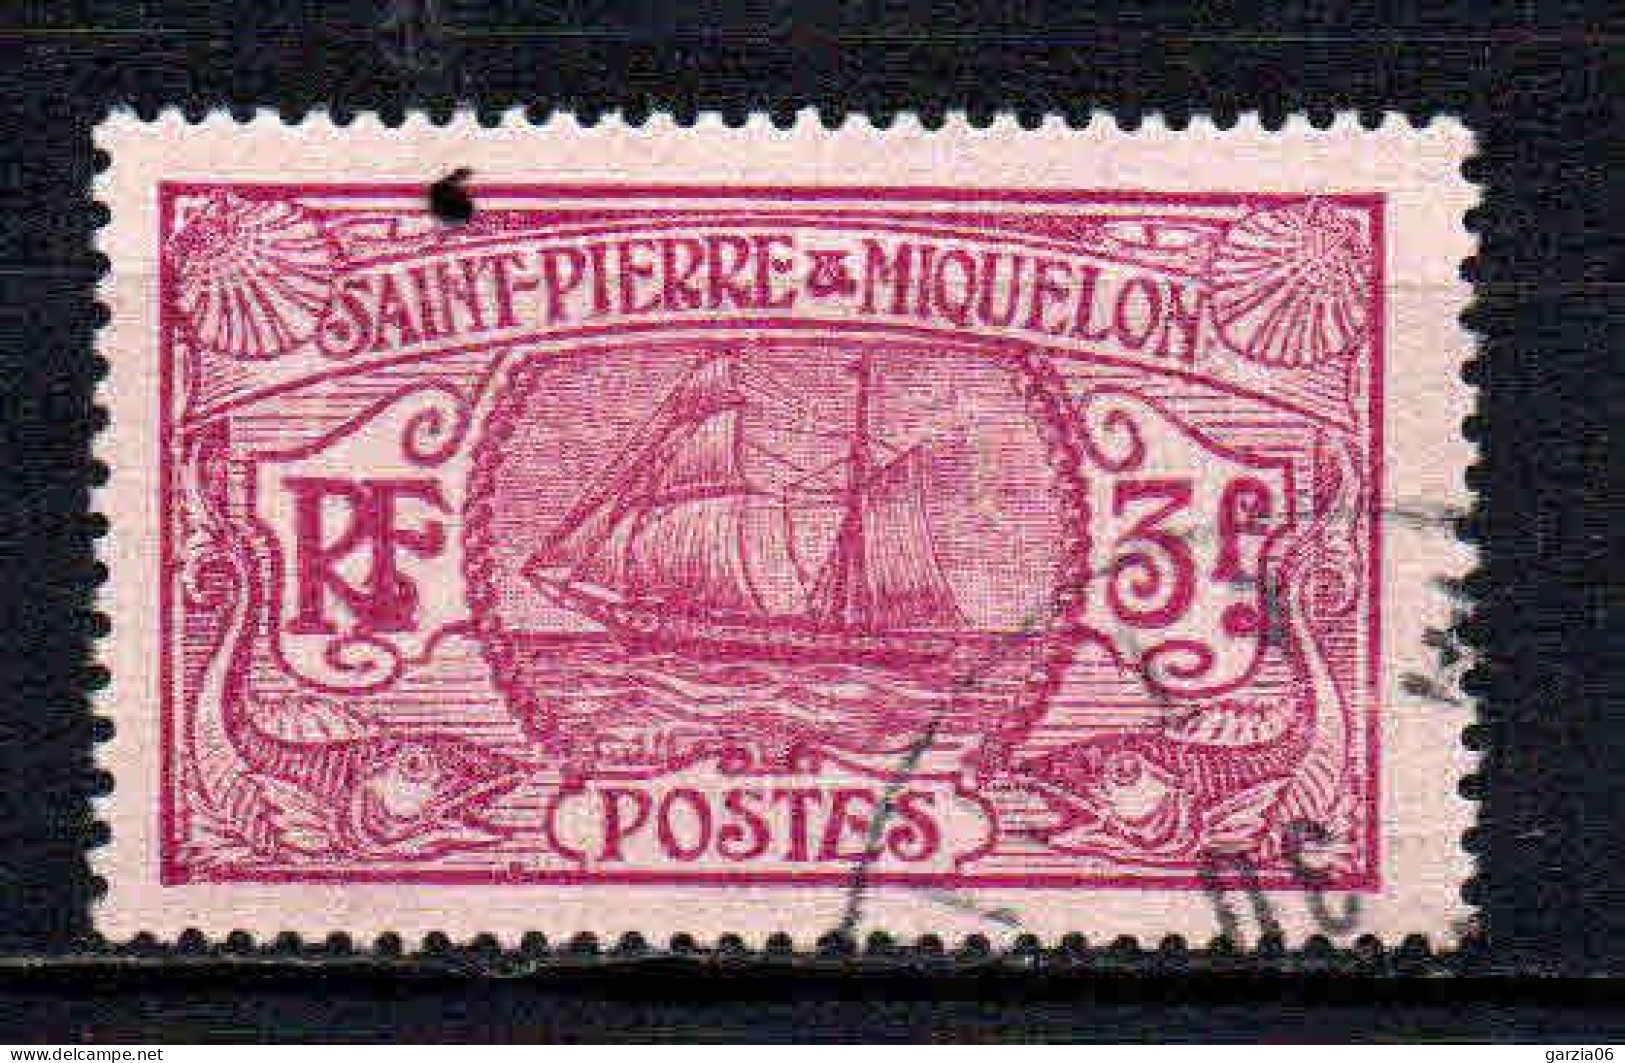 St Pierre Et Miquelon    - 1930 - Bateau De Pêche   - N° 131  - Oblit - Used - Oblitérés